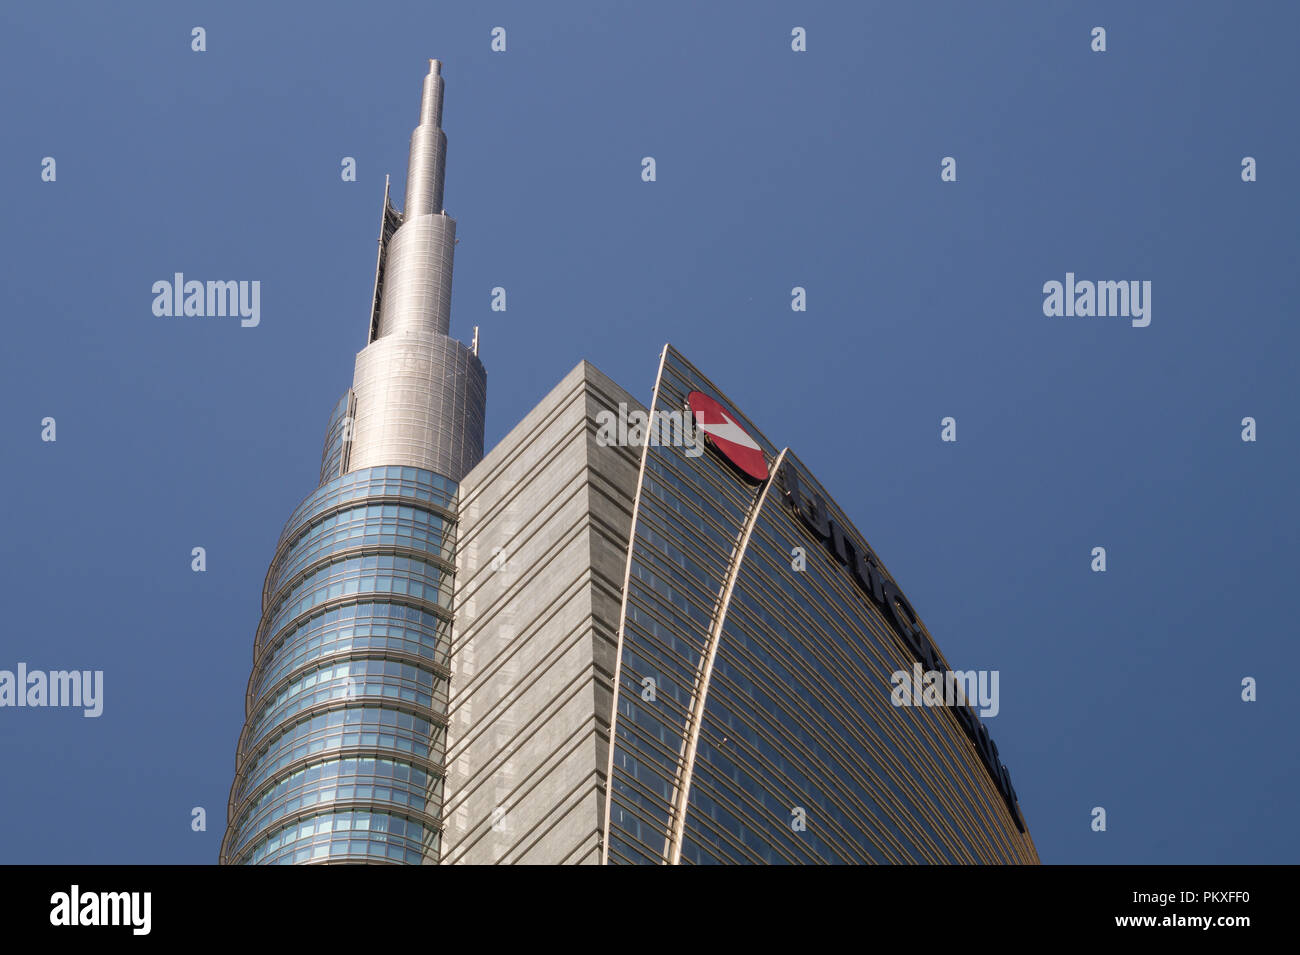 El Unicredit Tower rascacielos en Milán (2012), el edificio más alto de Italia, diseñado por Cesar Pelli (Pelli Clarke Pelli Architects) en Porta Nuova. Foto de stock